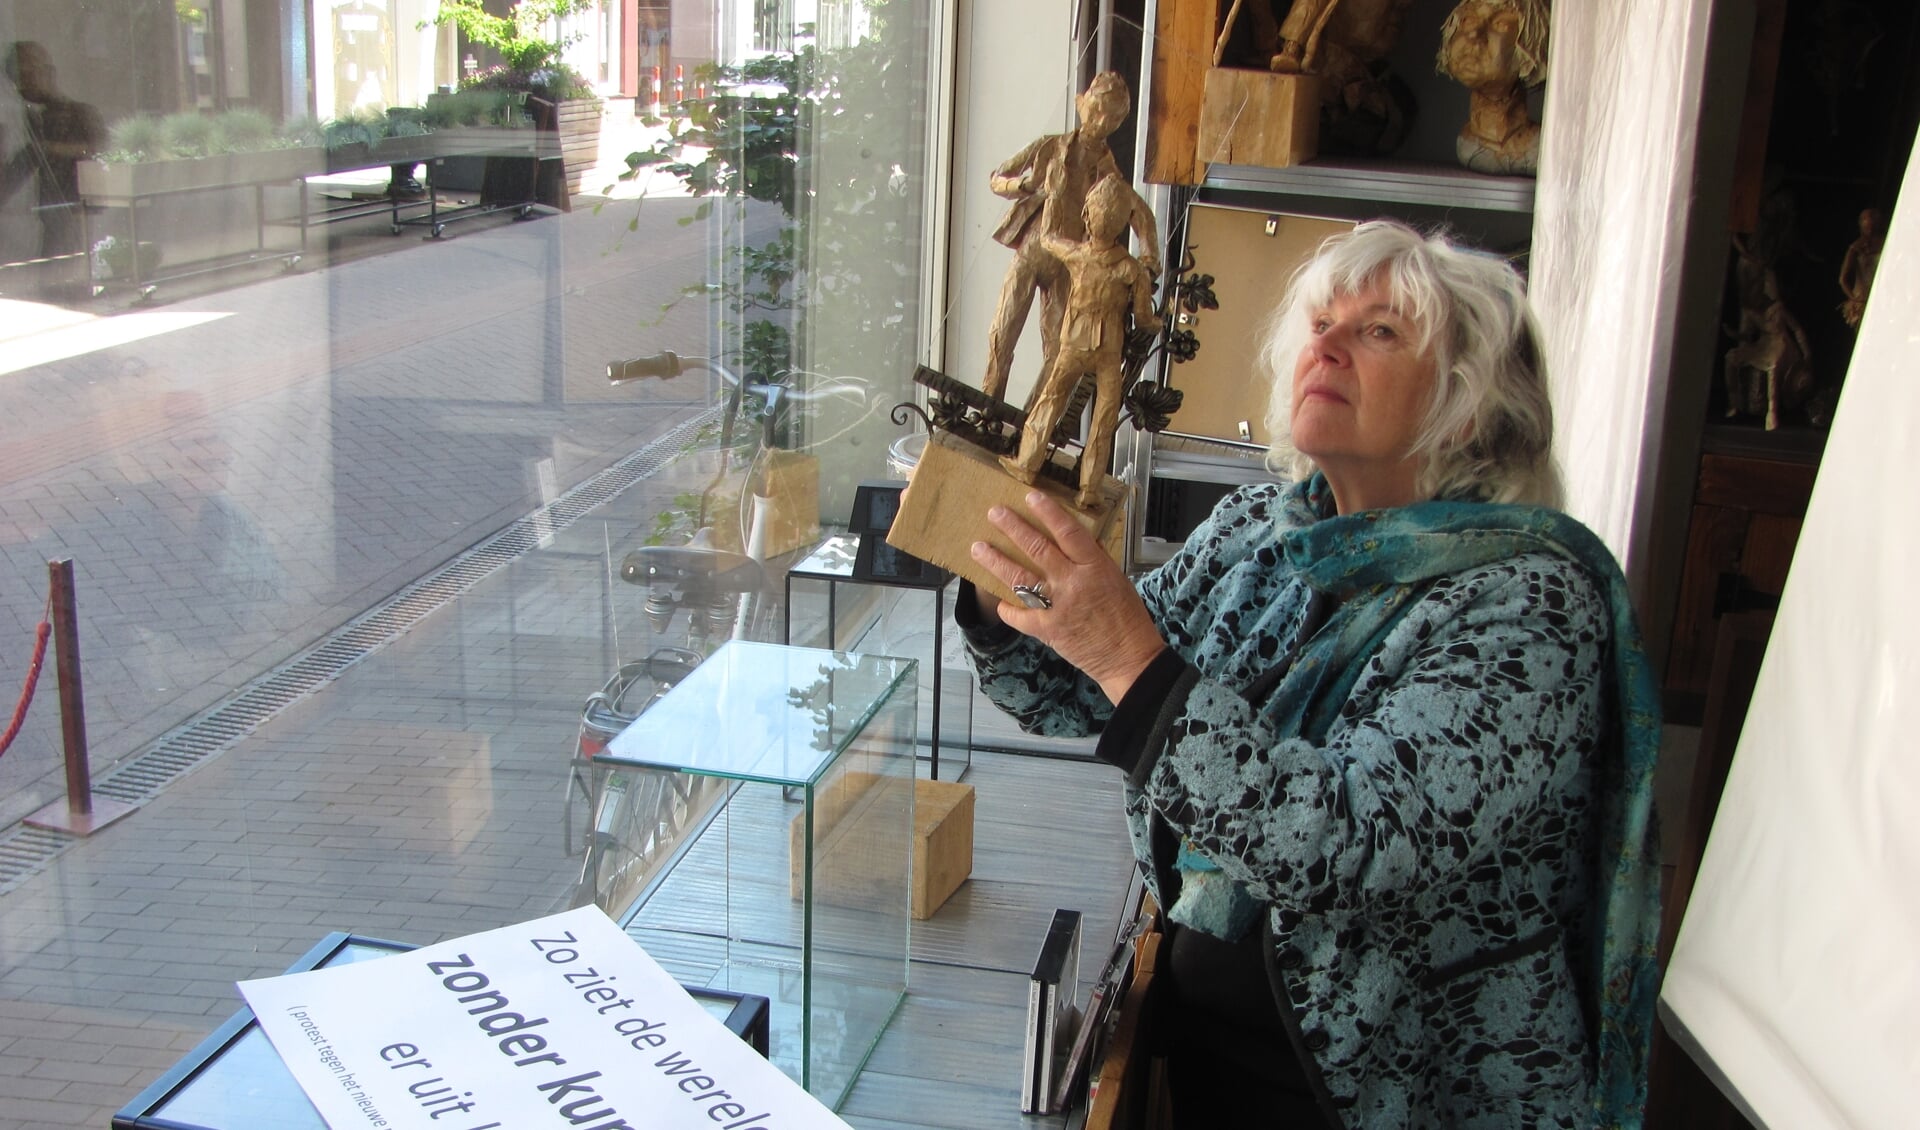 Beeldend kunstenaar Mieke Zundert haalt uit protest de etalage van haar winkelatelier leeg.